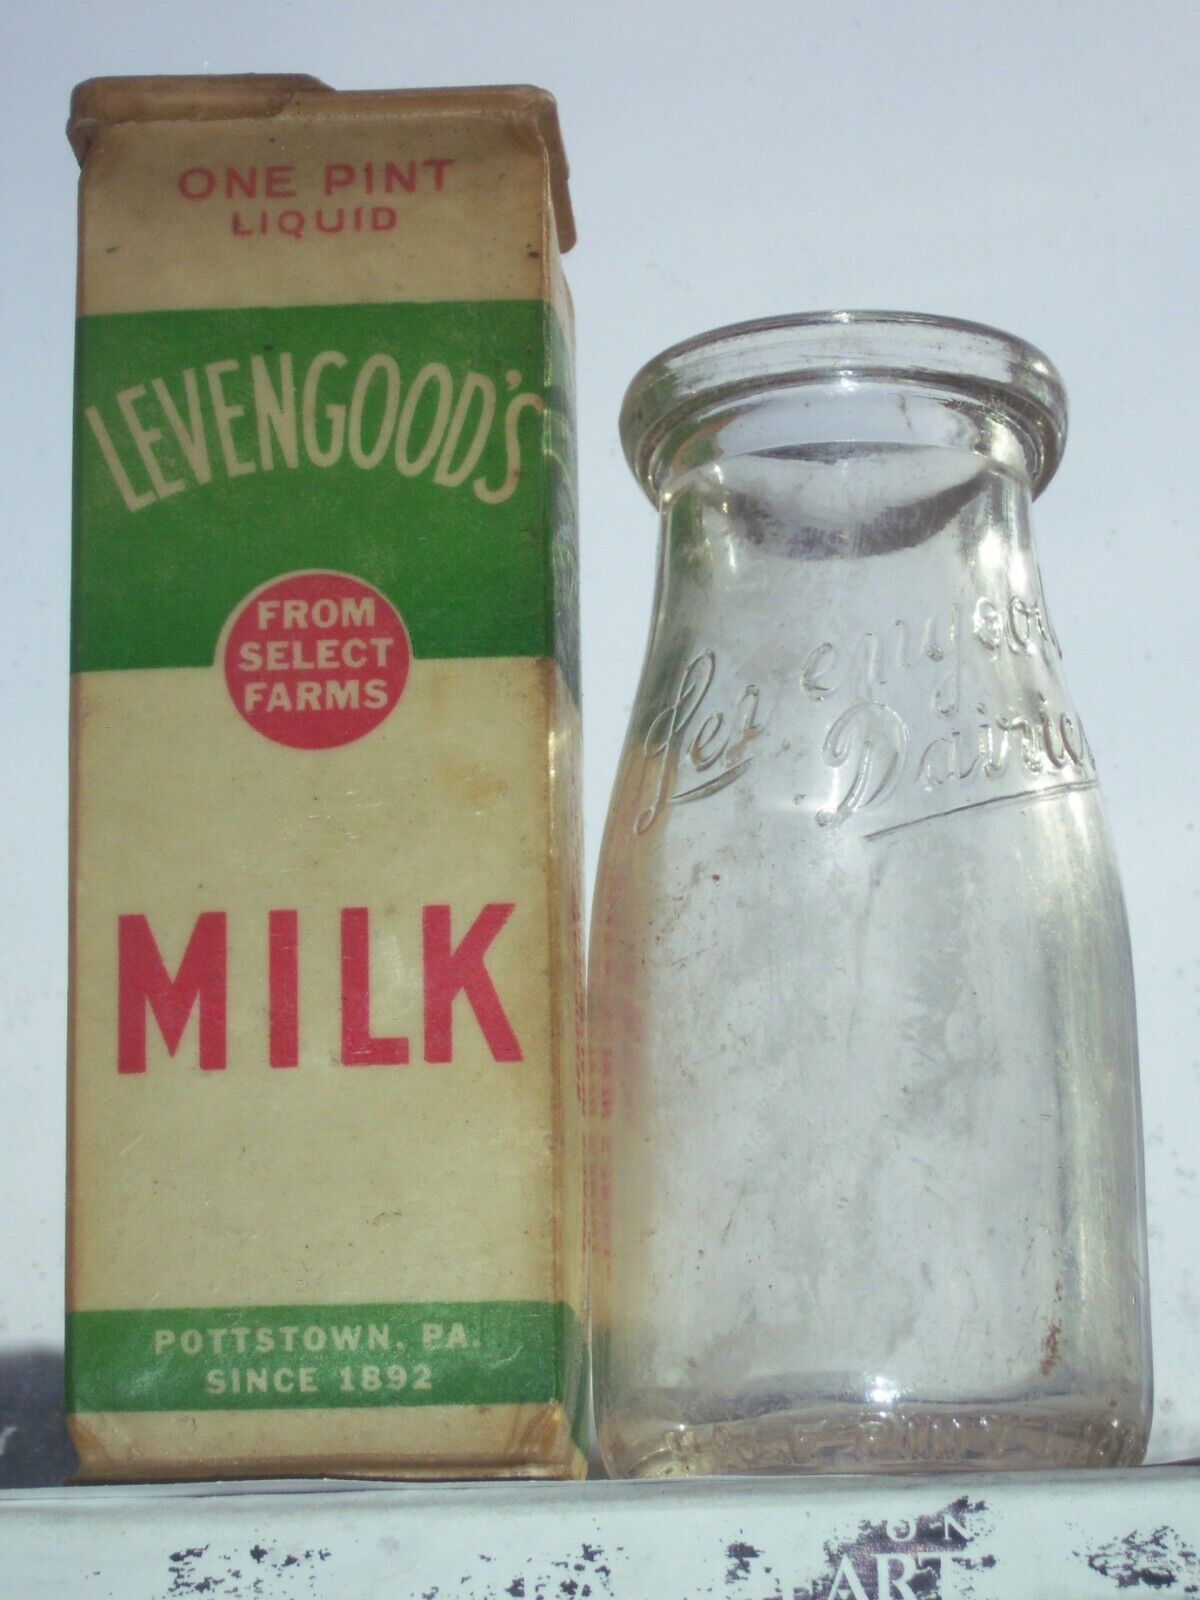 Vintage Levengoods Dairies milk bottle & plastic milk carton Pottstown, Pa,